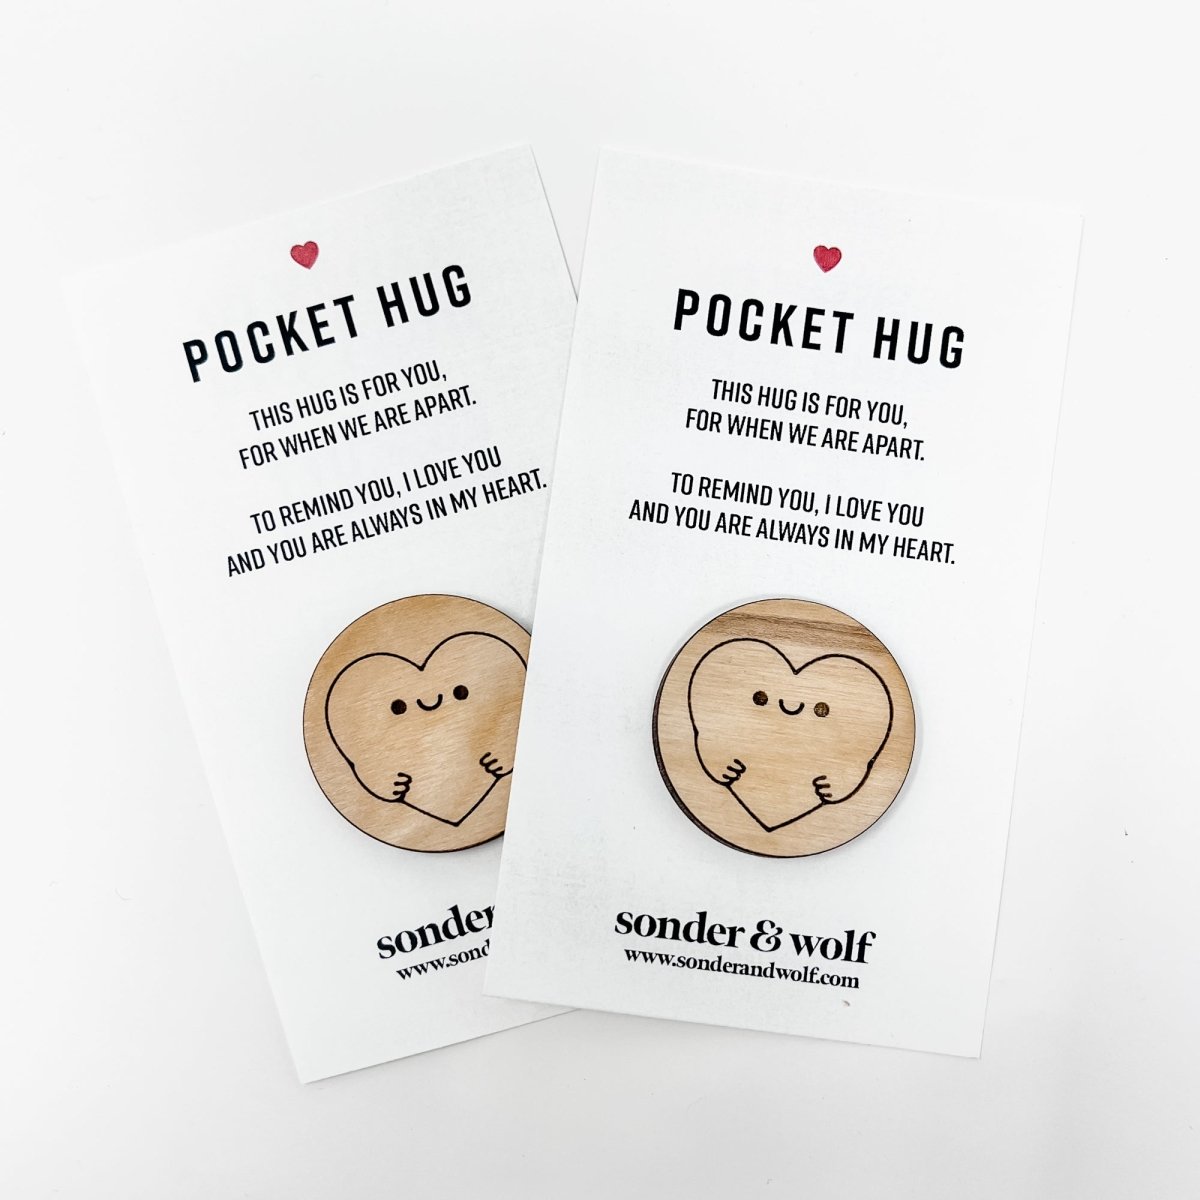 Pocket Hug Token – Sprinkled with Magic